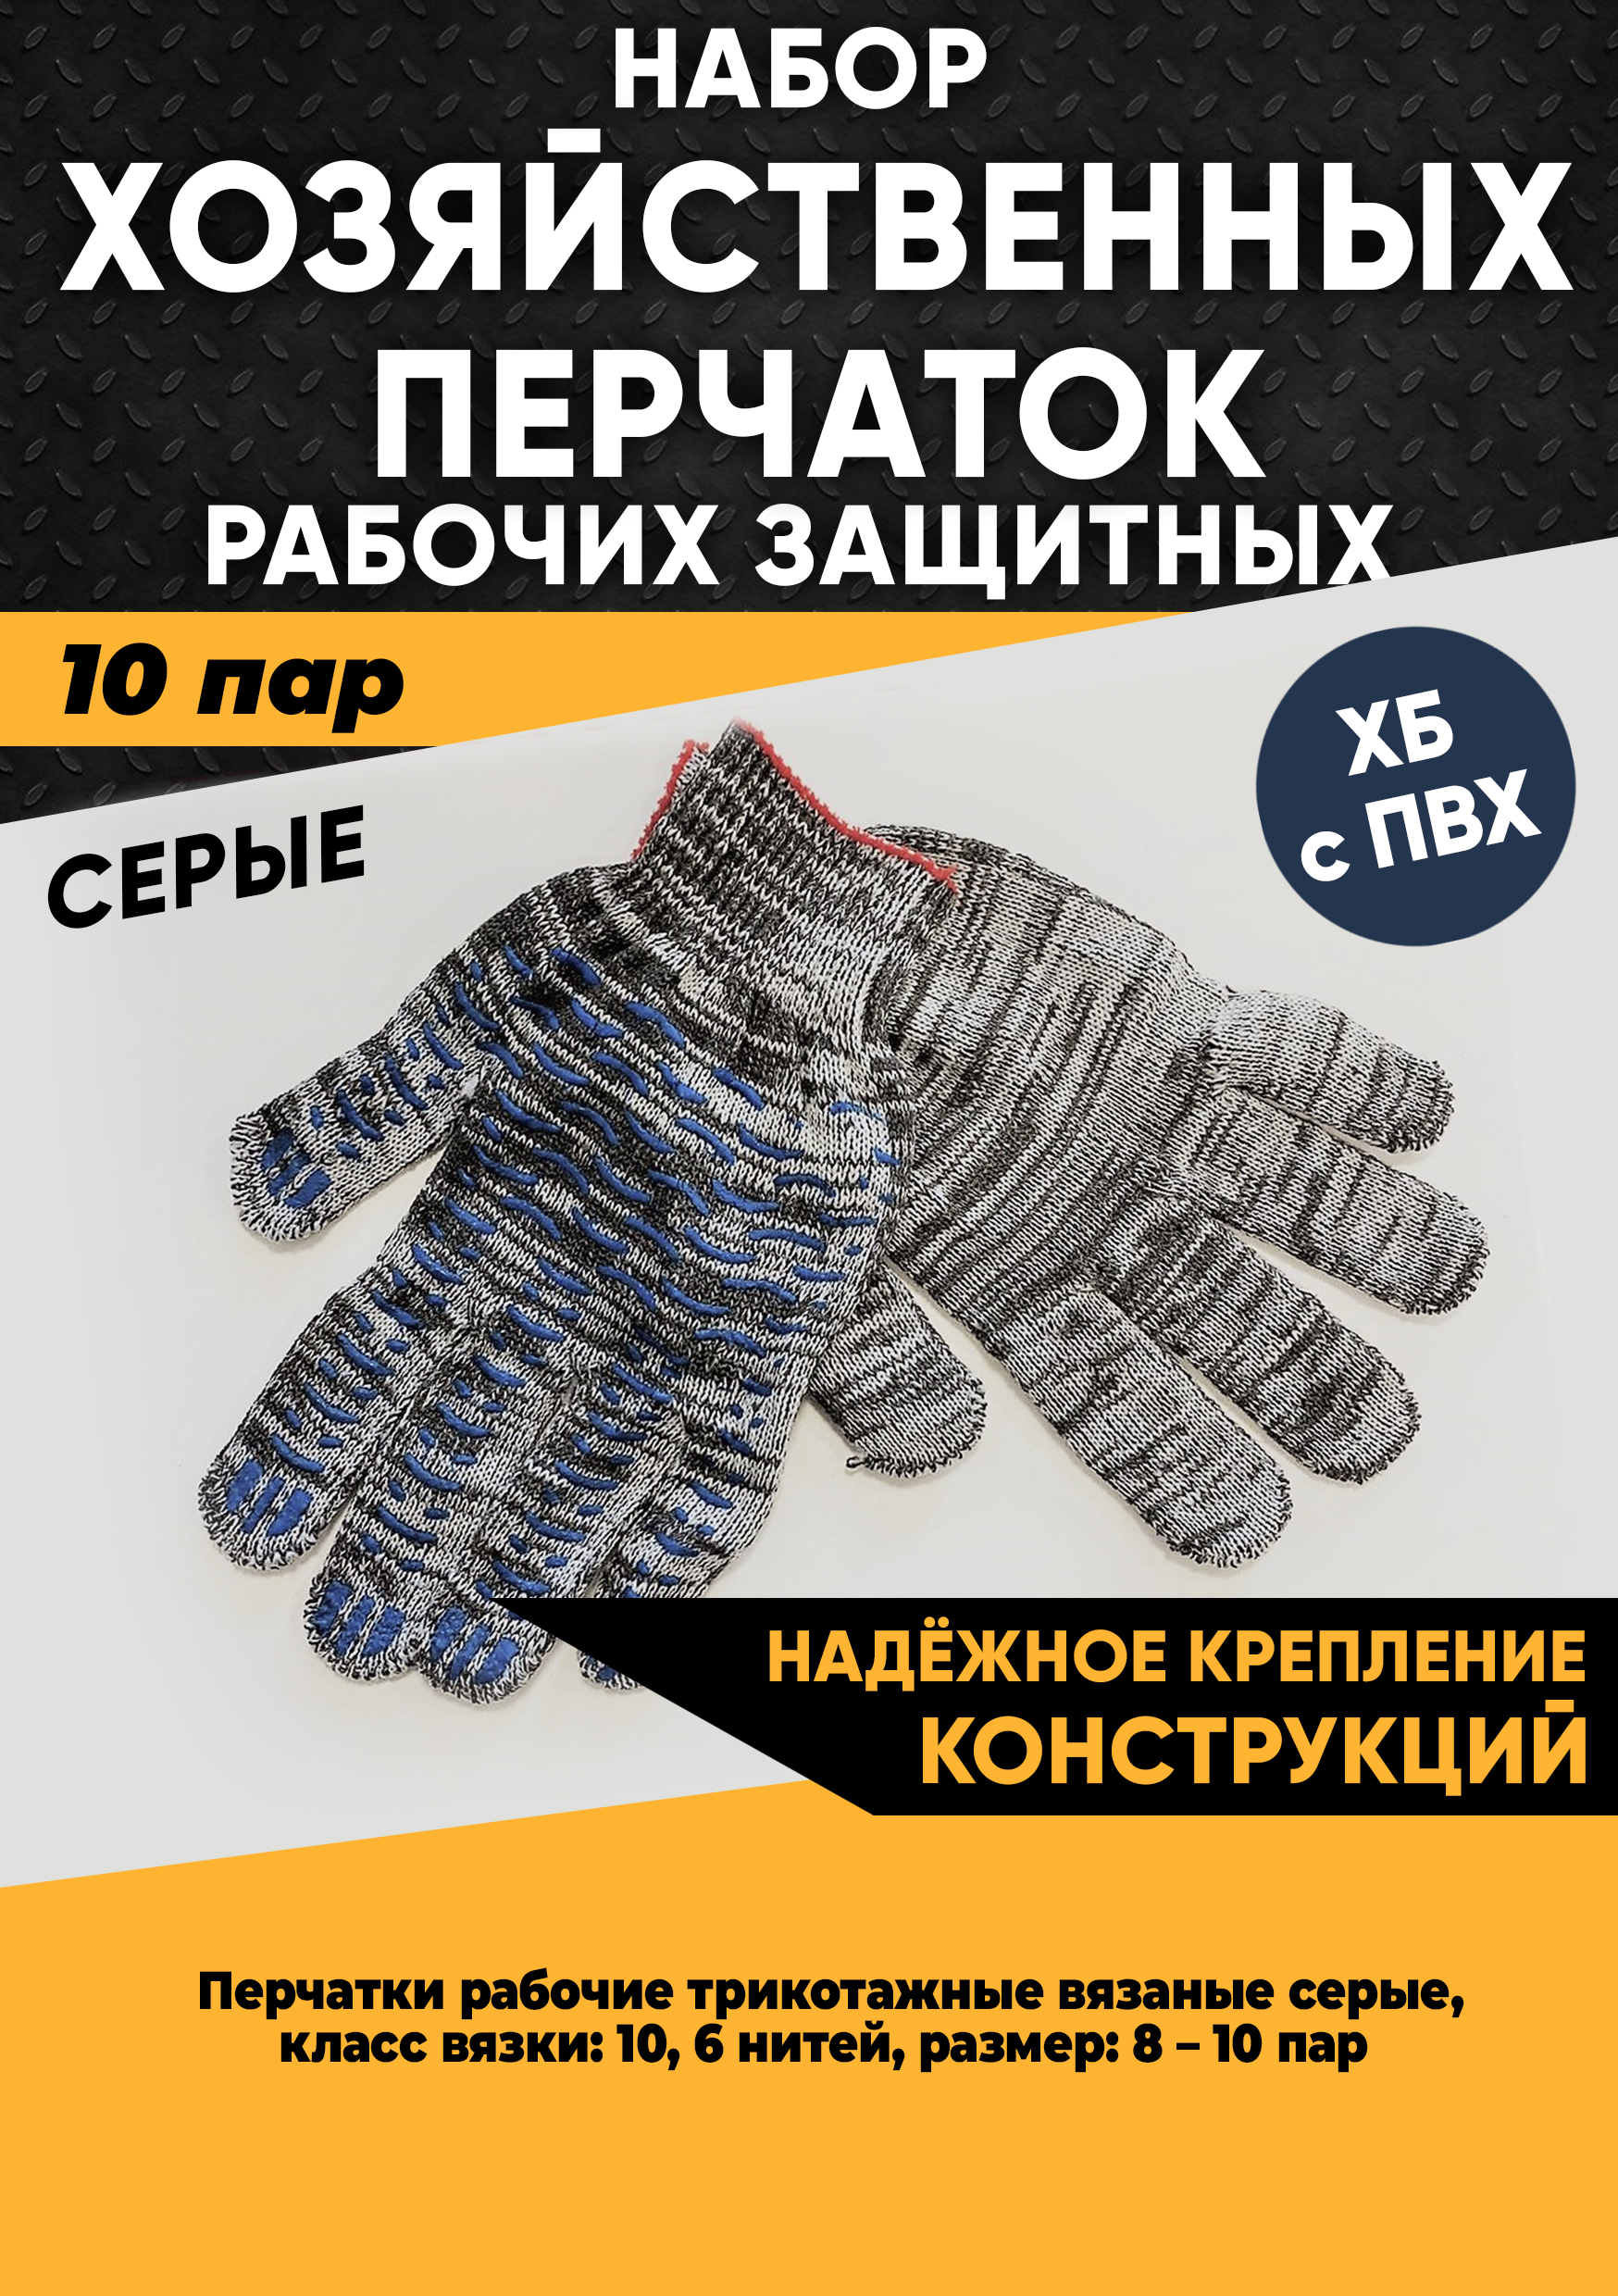 Хозяйственные перчатки KraSimall рабочие защитные ХБ с ПВХ, 6 нитей, серые, 10 пар, 100265 рабочие защитные ультратонкие перчатки tegera